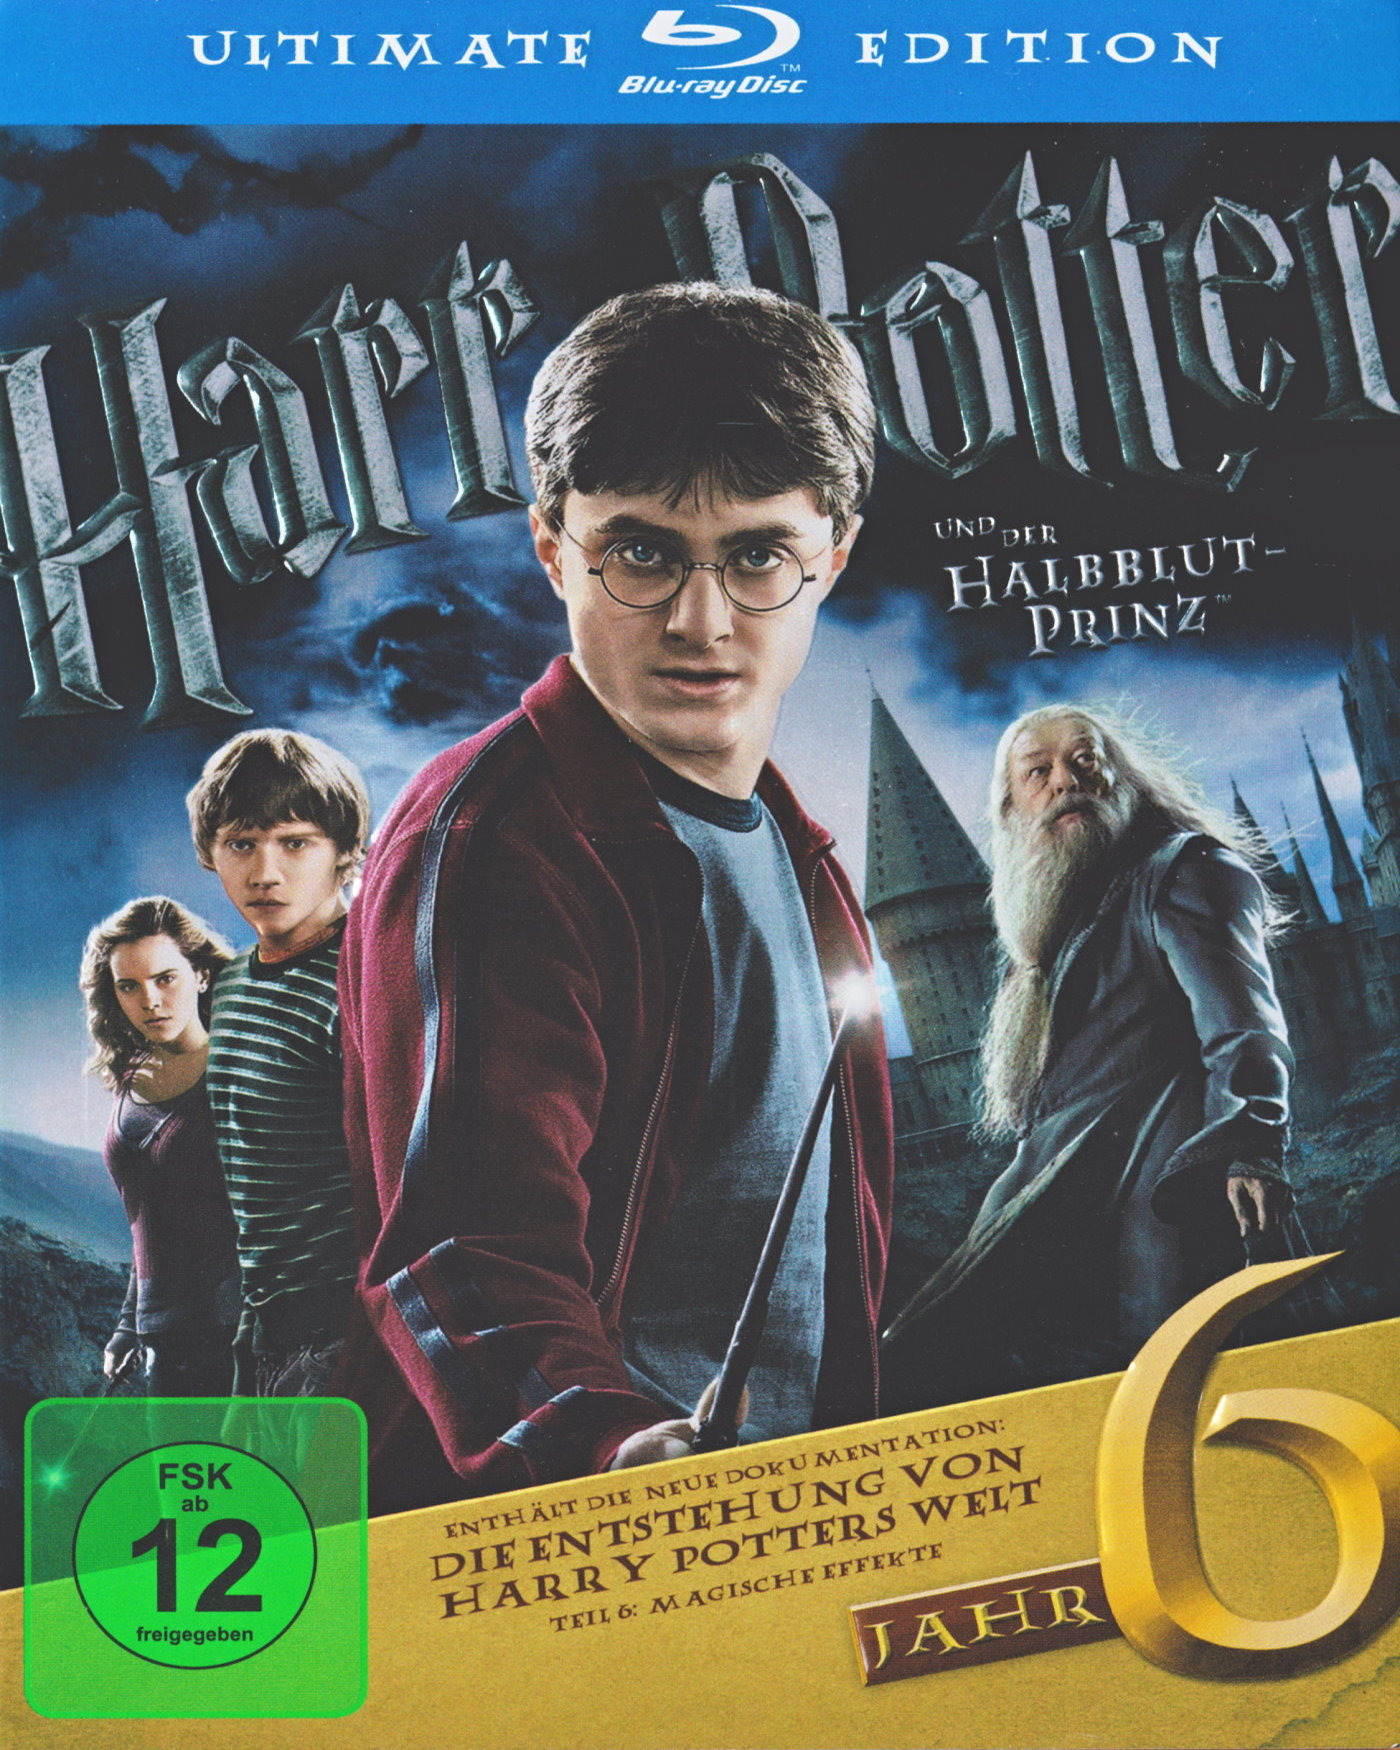 Cover - Harry Potter und der Halbblutprinz.jpg